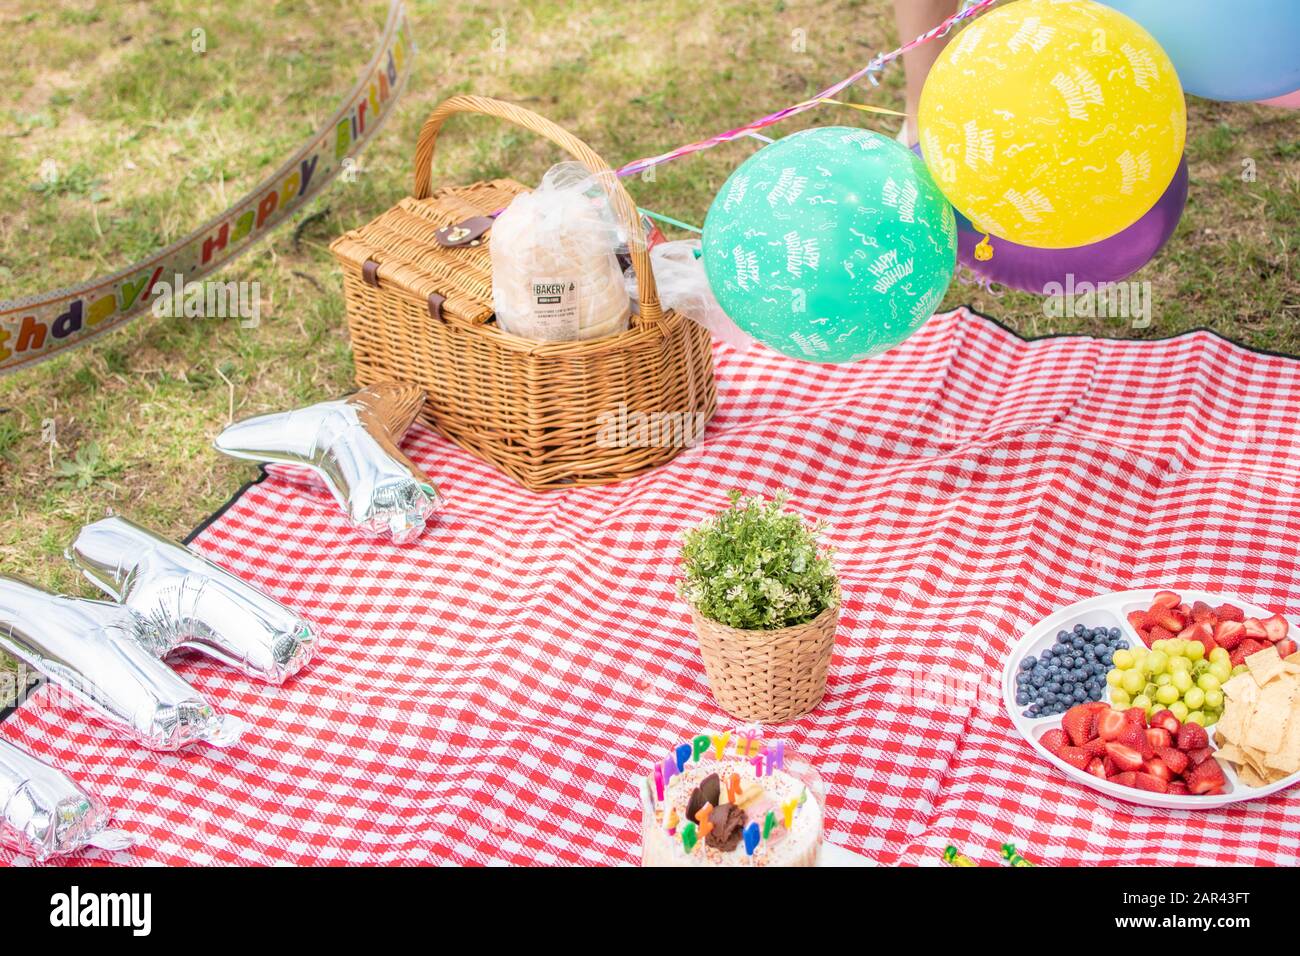 Meraviglioso picnic compleanno in un parco con globi, torta, frutta e kit picnic, Victoria, Melbourne, Australia Foto Stock